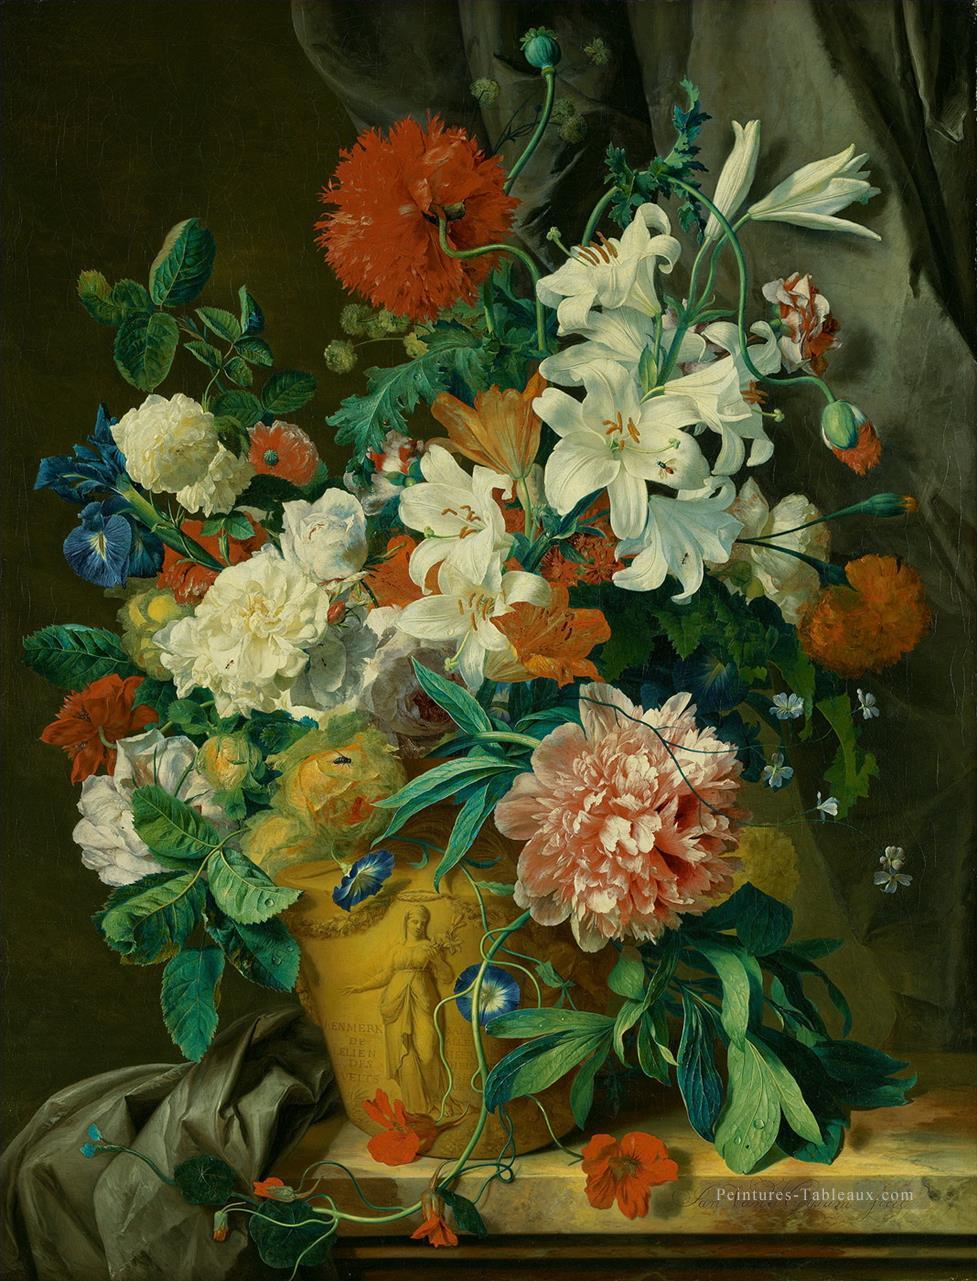 Stilleven a rencontré des Fowers de Bloemen dans le pot Jan van Huysum fleurs classiques Peintures à l'huile